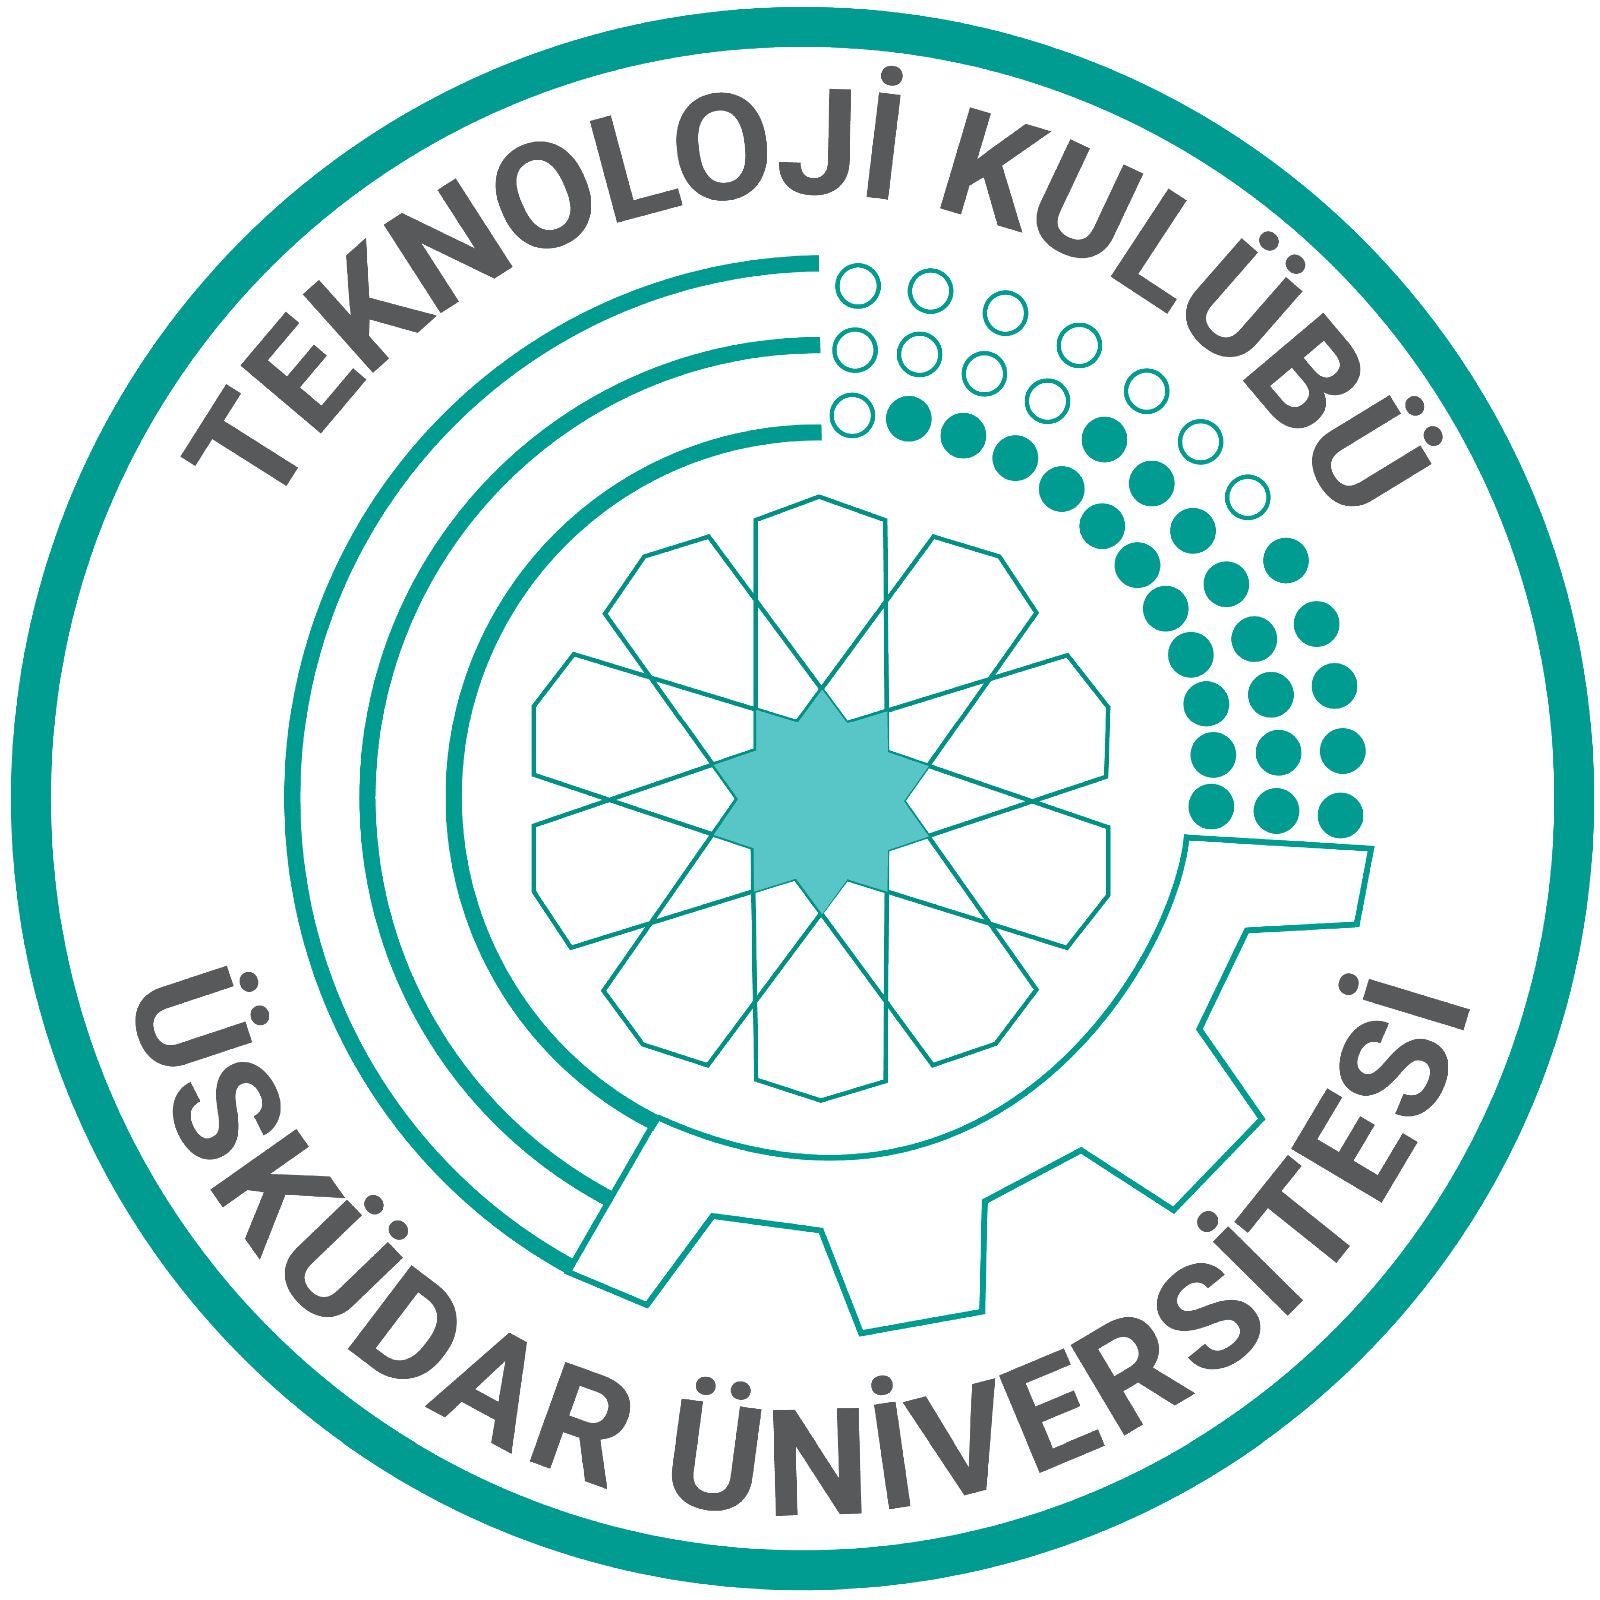 Üsküdar Üniversitesi Teknoloji Kulübü